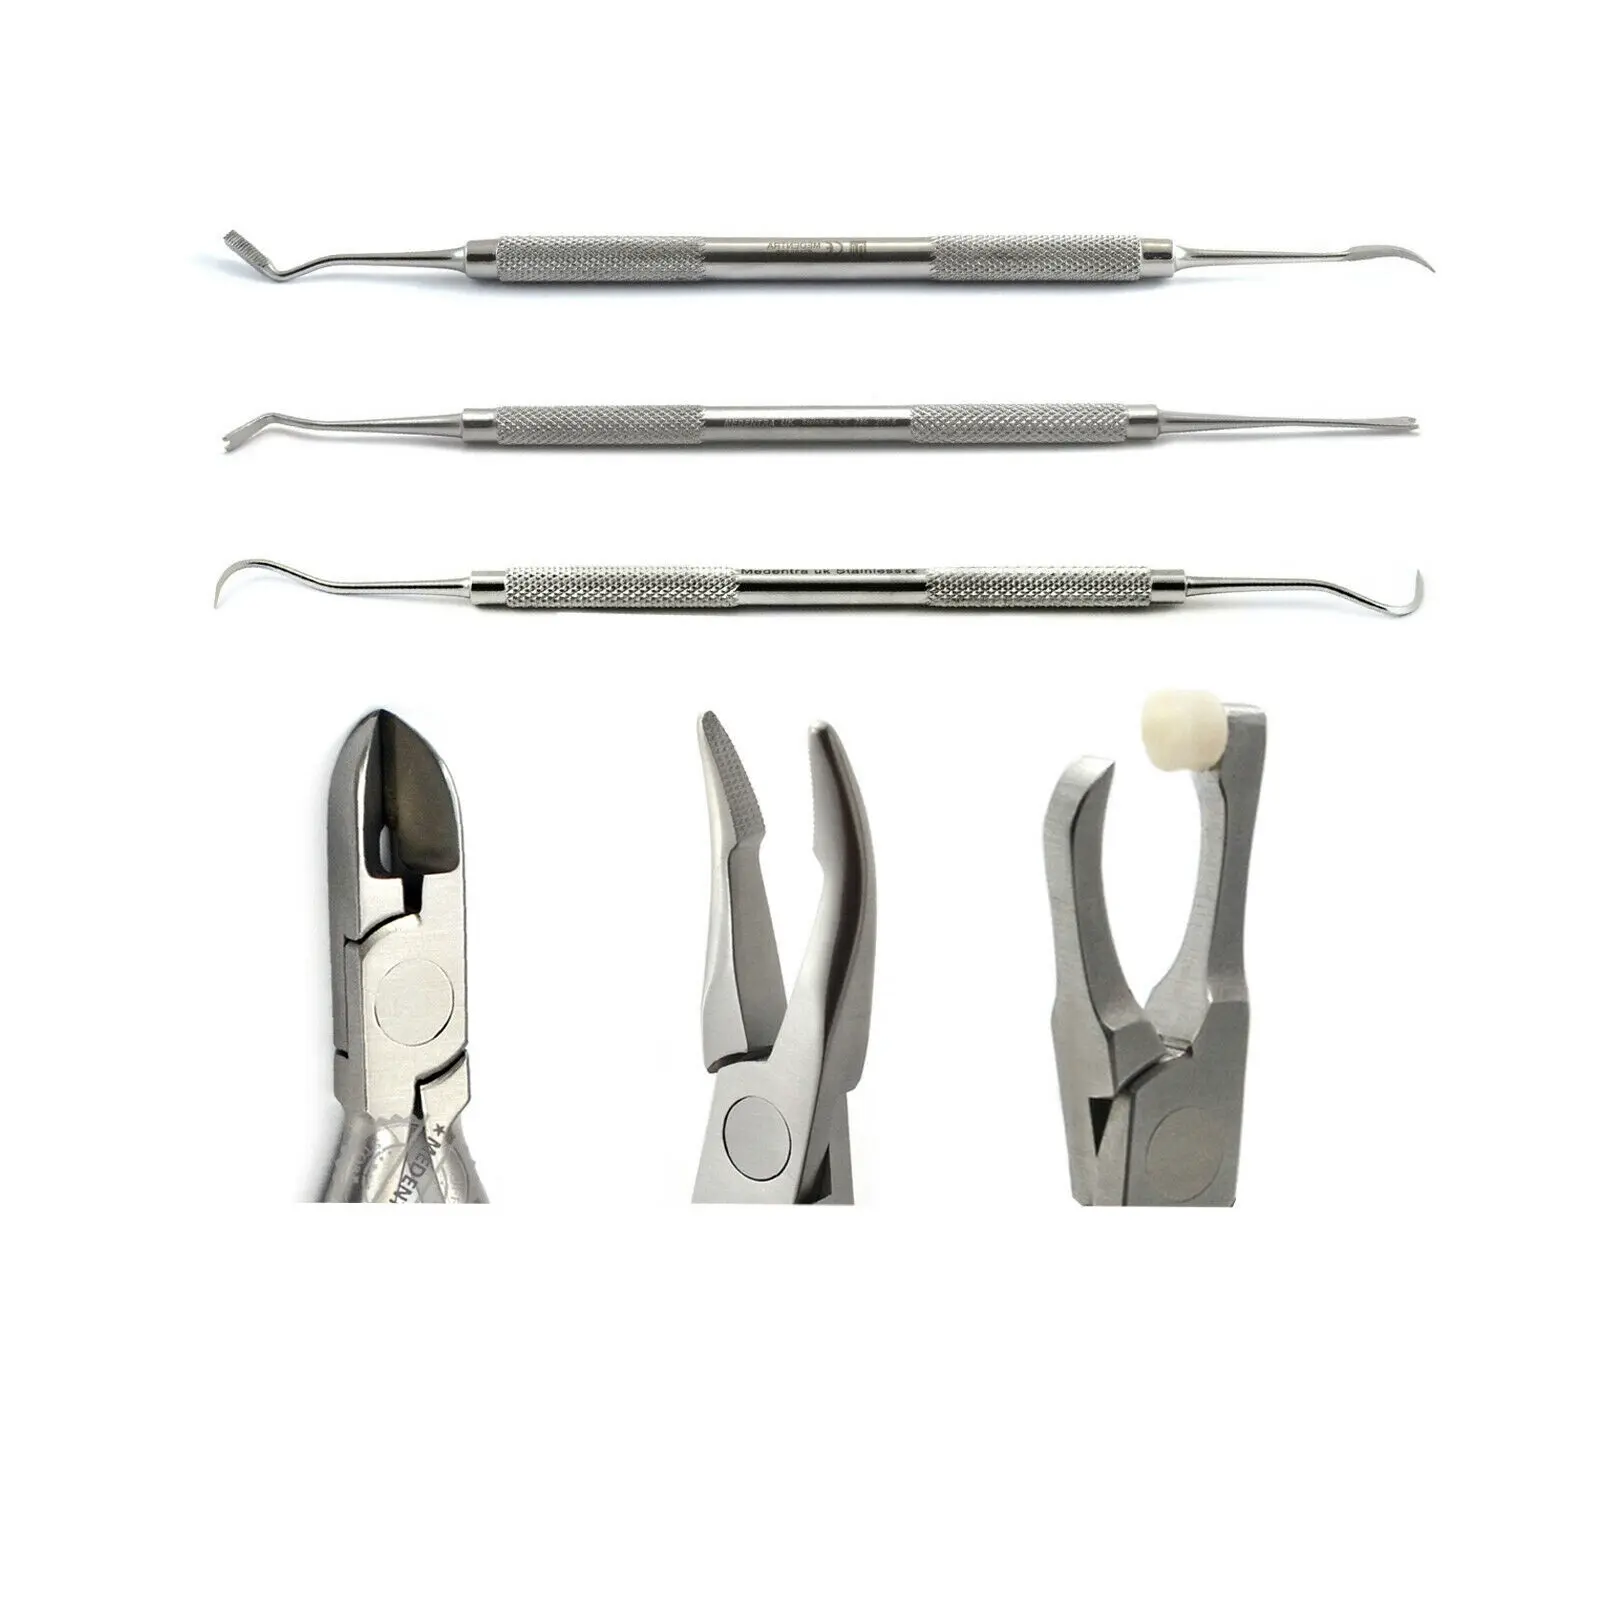 Alicate de remoção de fita para braços molares, kit de prendedor de fita para cirurgia ortodôntica, prendedor de fita para remoção de fita de dentes